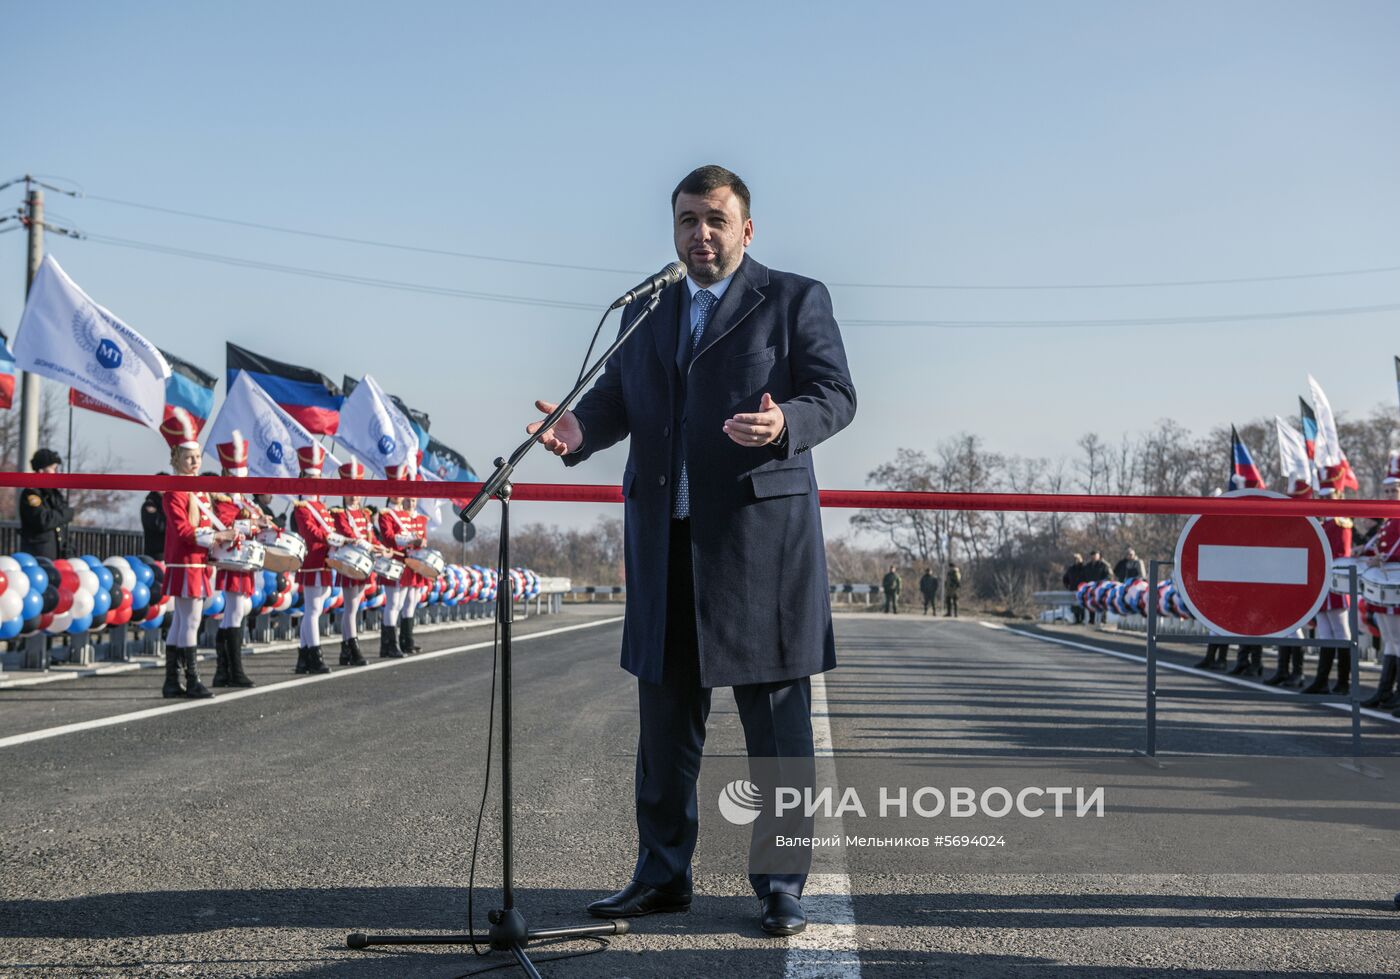 Енакиевский путепровод введен в эксплуатацию в Донецкой области